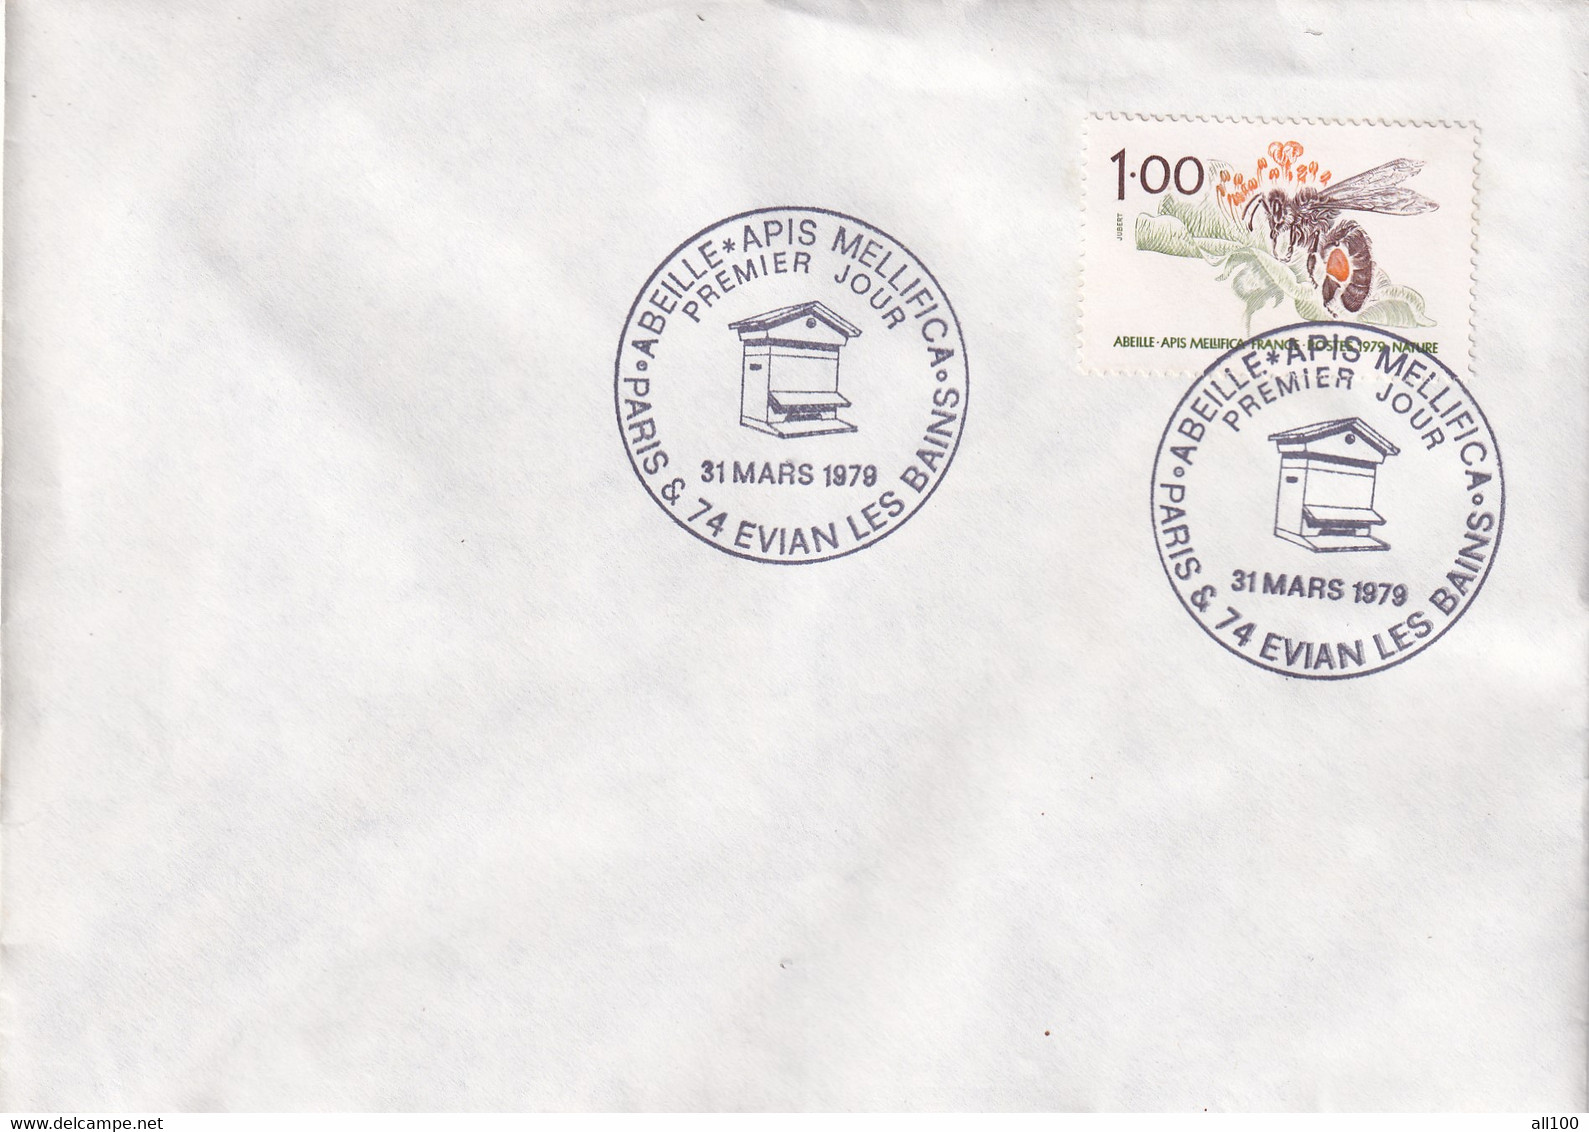 A21888 - Abeille Apis Mellifica Paris Evian Les Bains Cover Envelope Unused 1979 Stamp Republique Francaise Honeybee Bee - Bienen